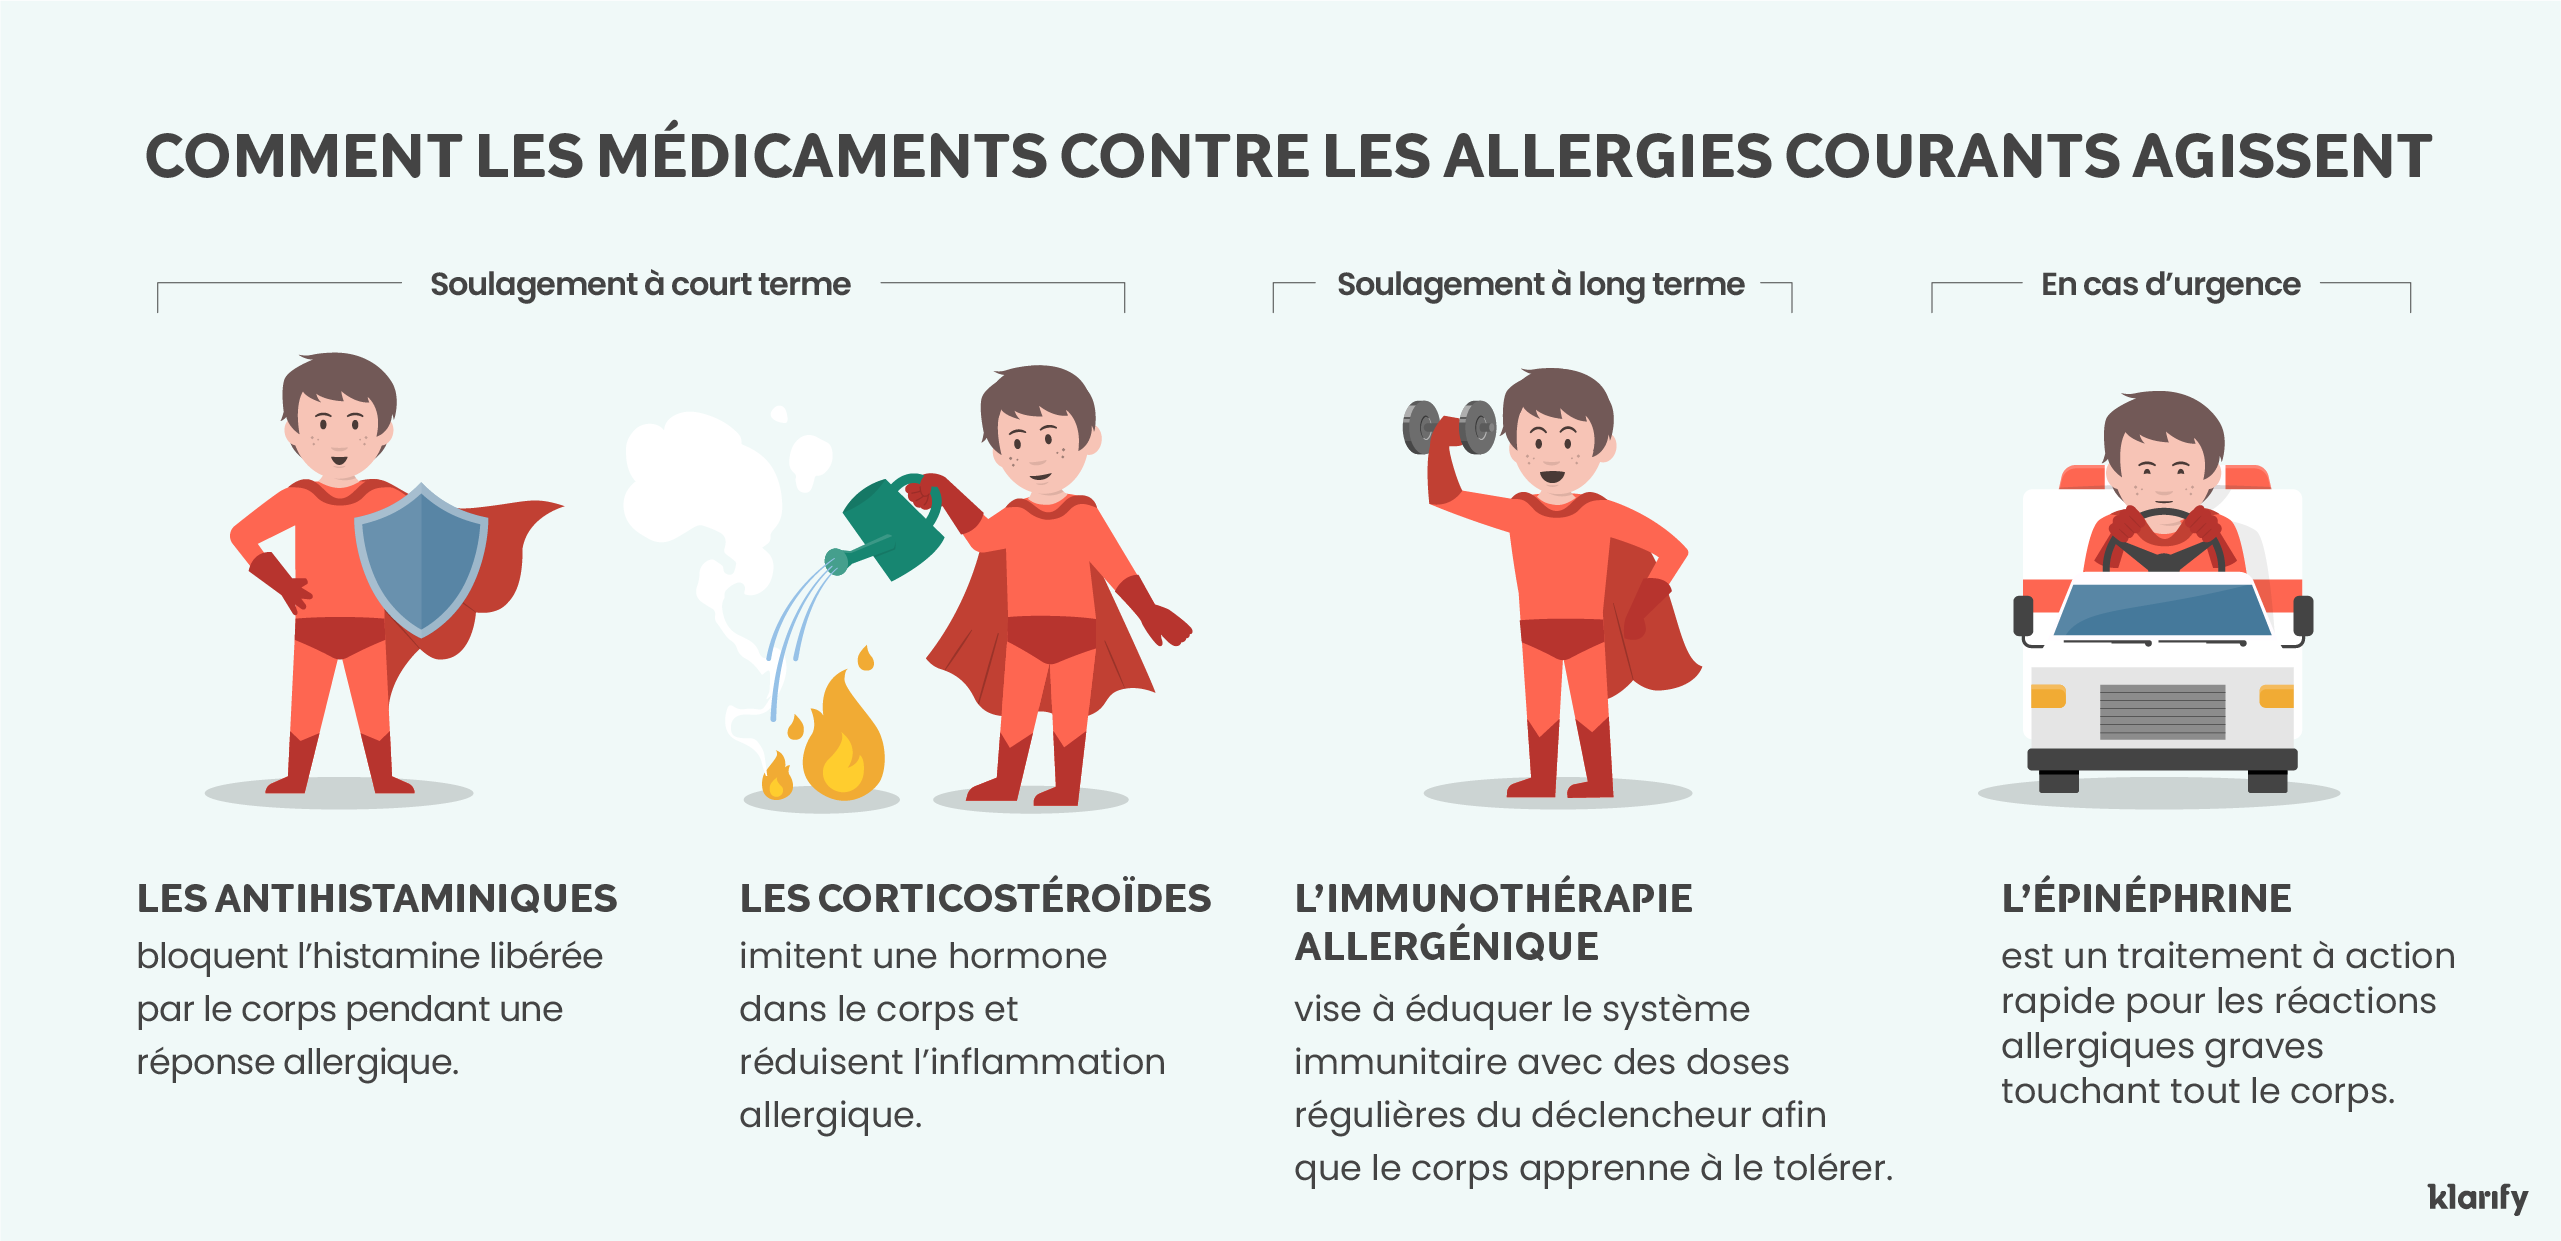 Infographie sur les médicaments courants contre les allergies chez les enfants et leur fonctionnement. Détails de l’infographie ci-dessous